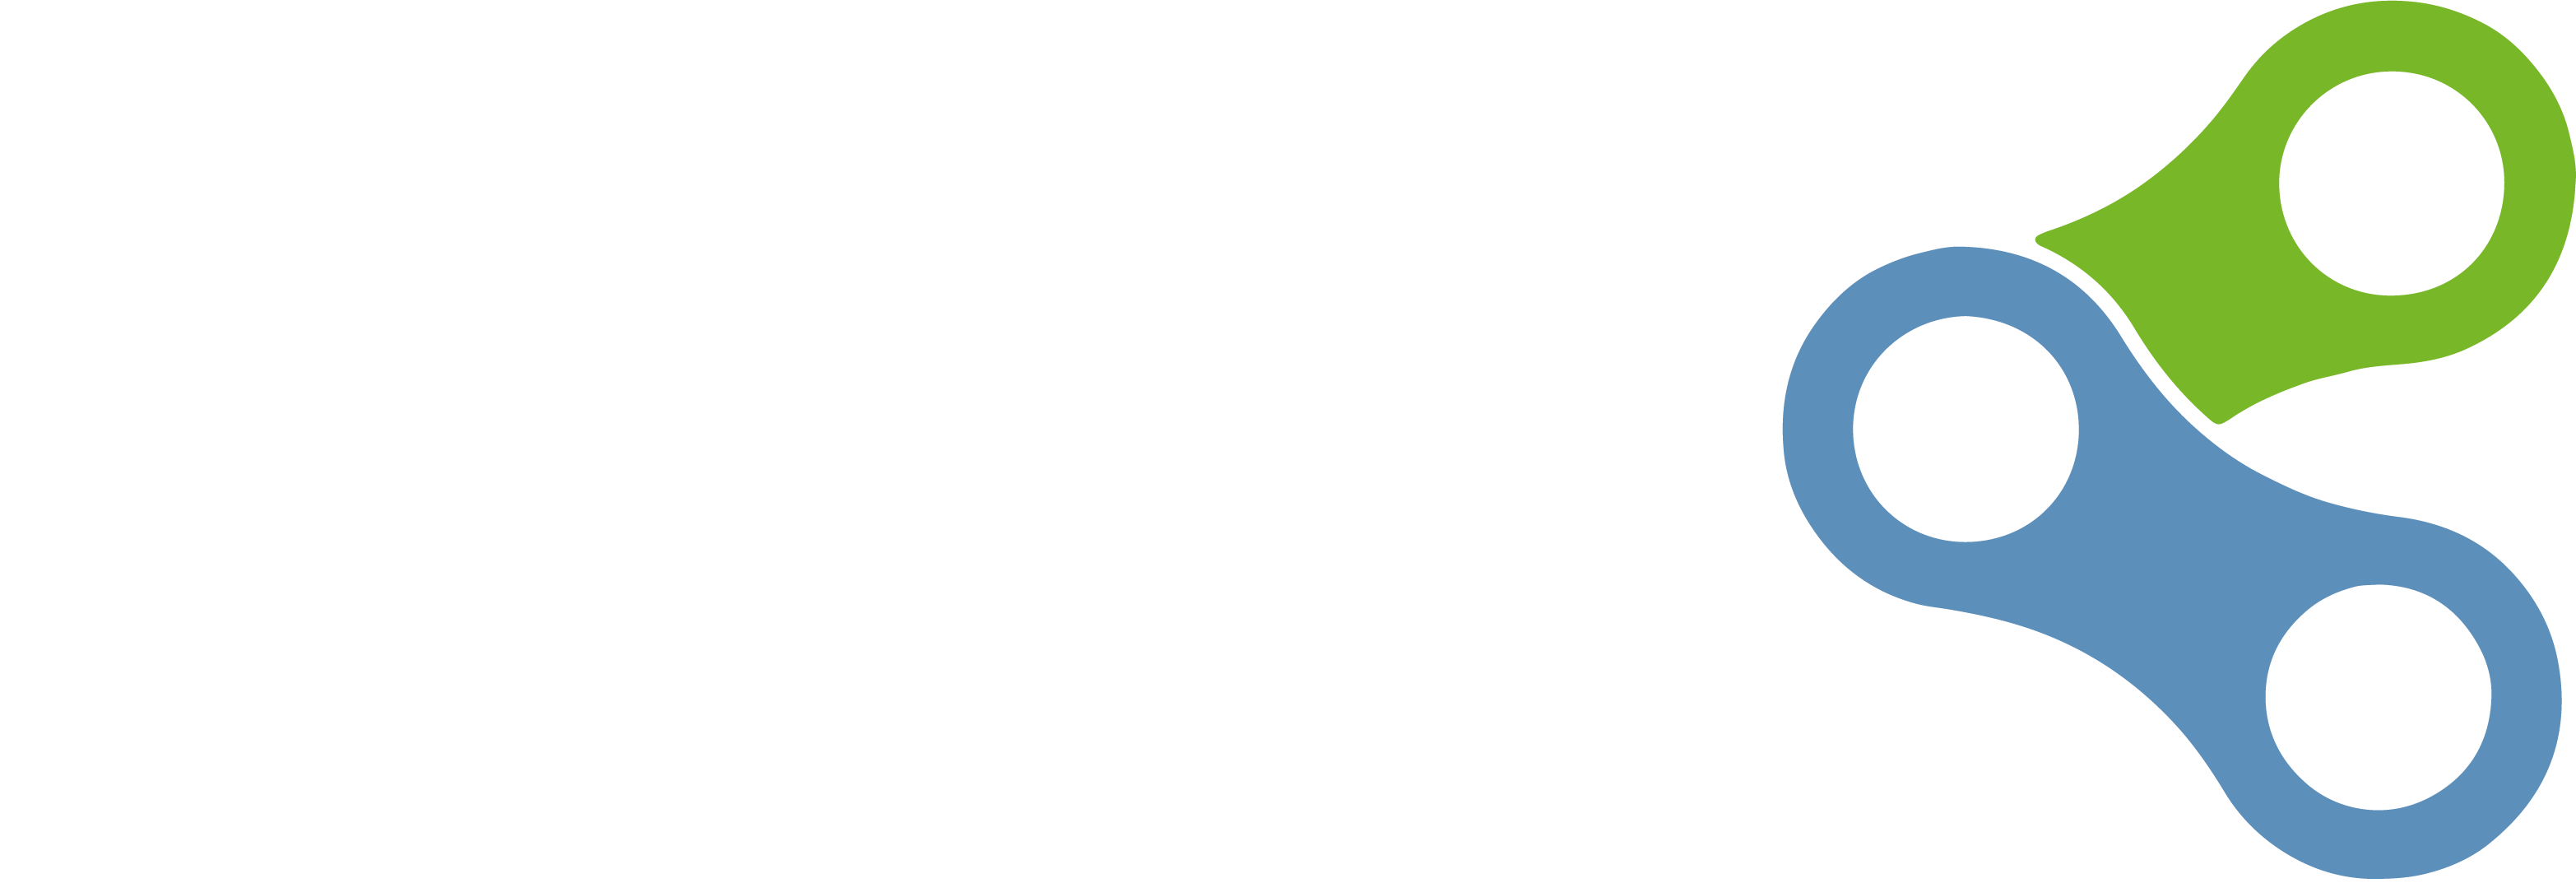 Xalix logo négatif_text_blanc